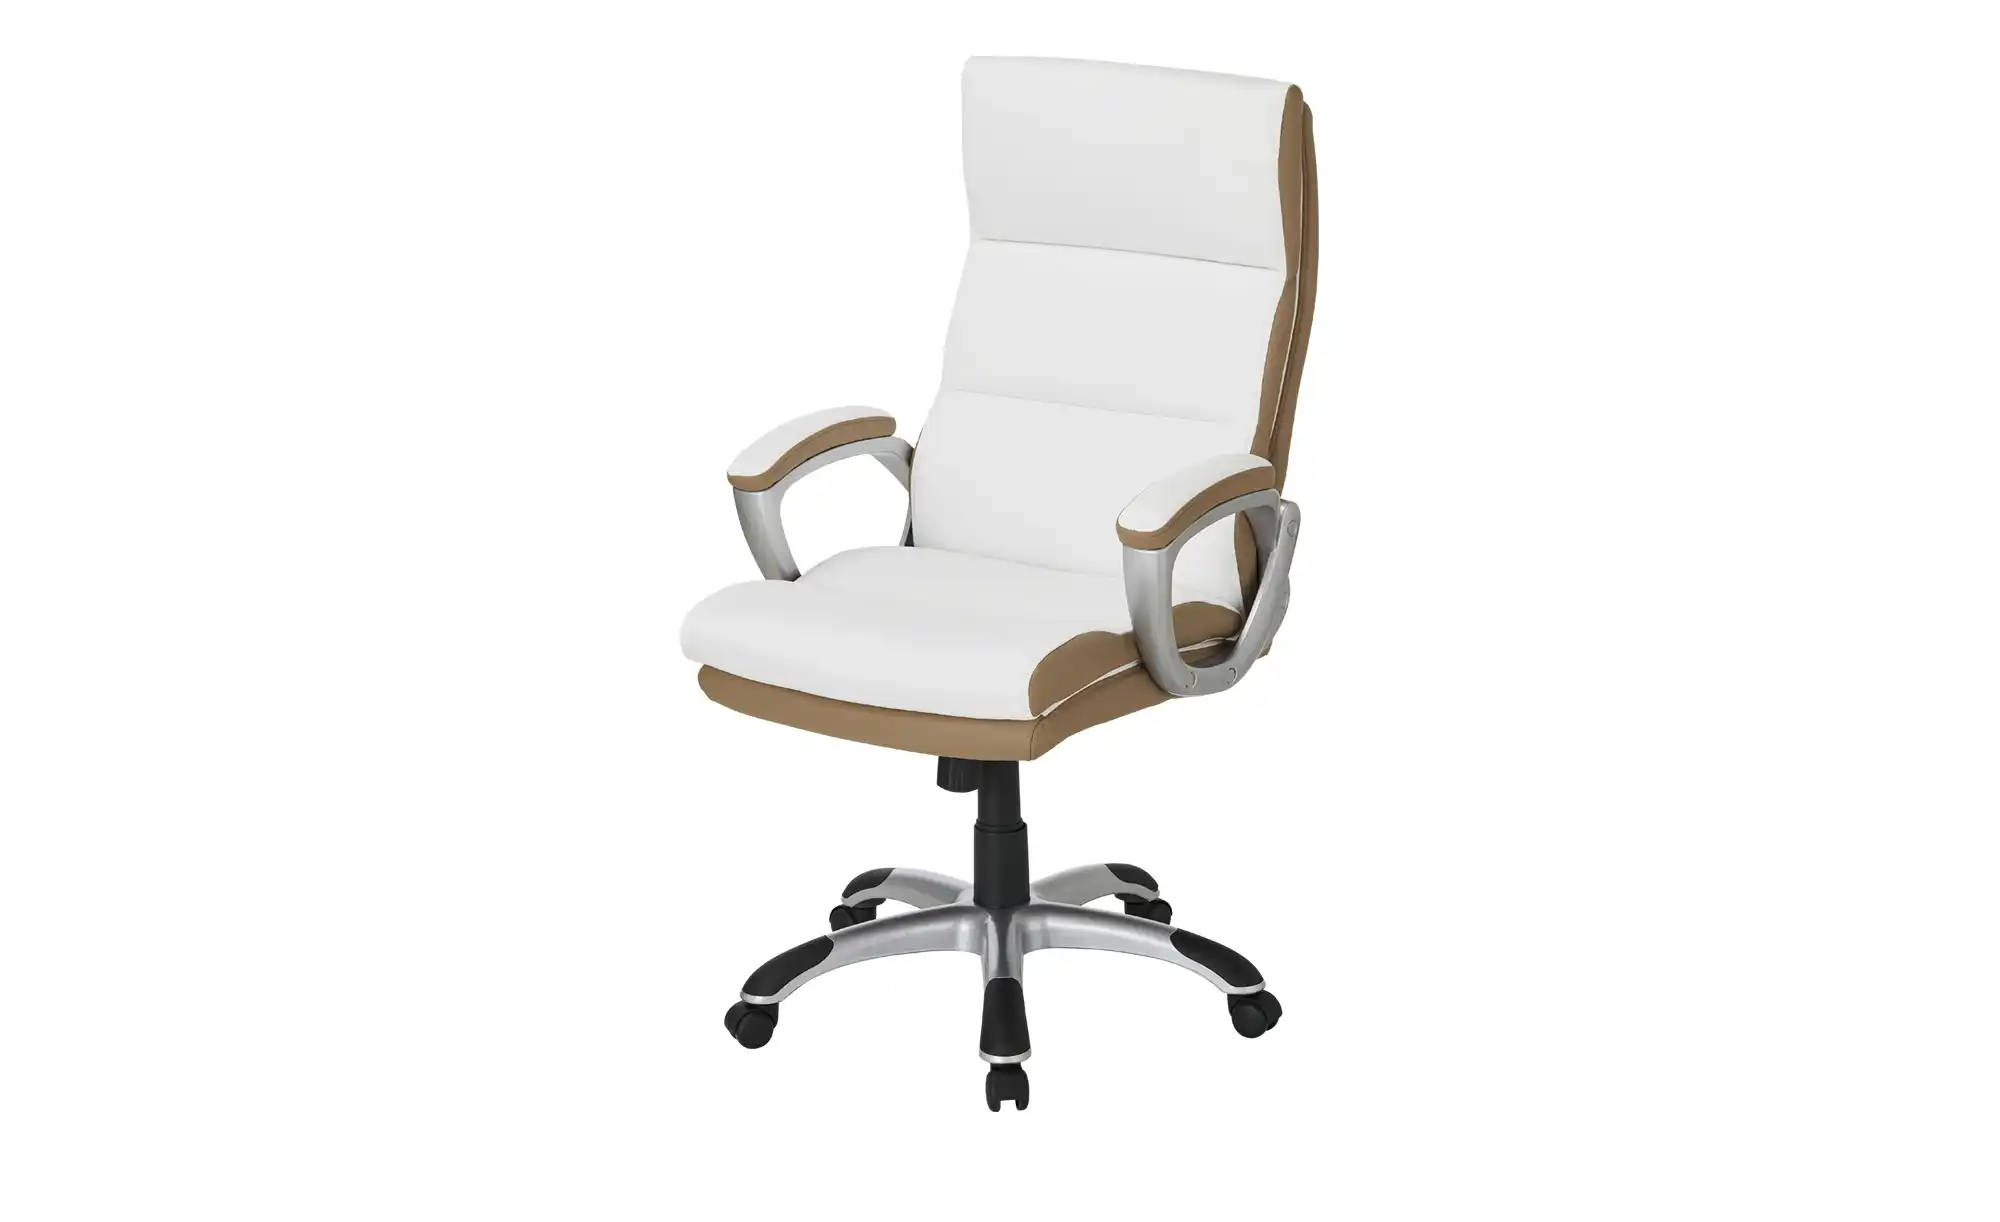 Chefsessel beige weiß Weißach 2 ¦ beige Stühle Bürostühle Chefsessel Höffner  - Onlineshop Möbel Höffner